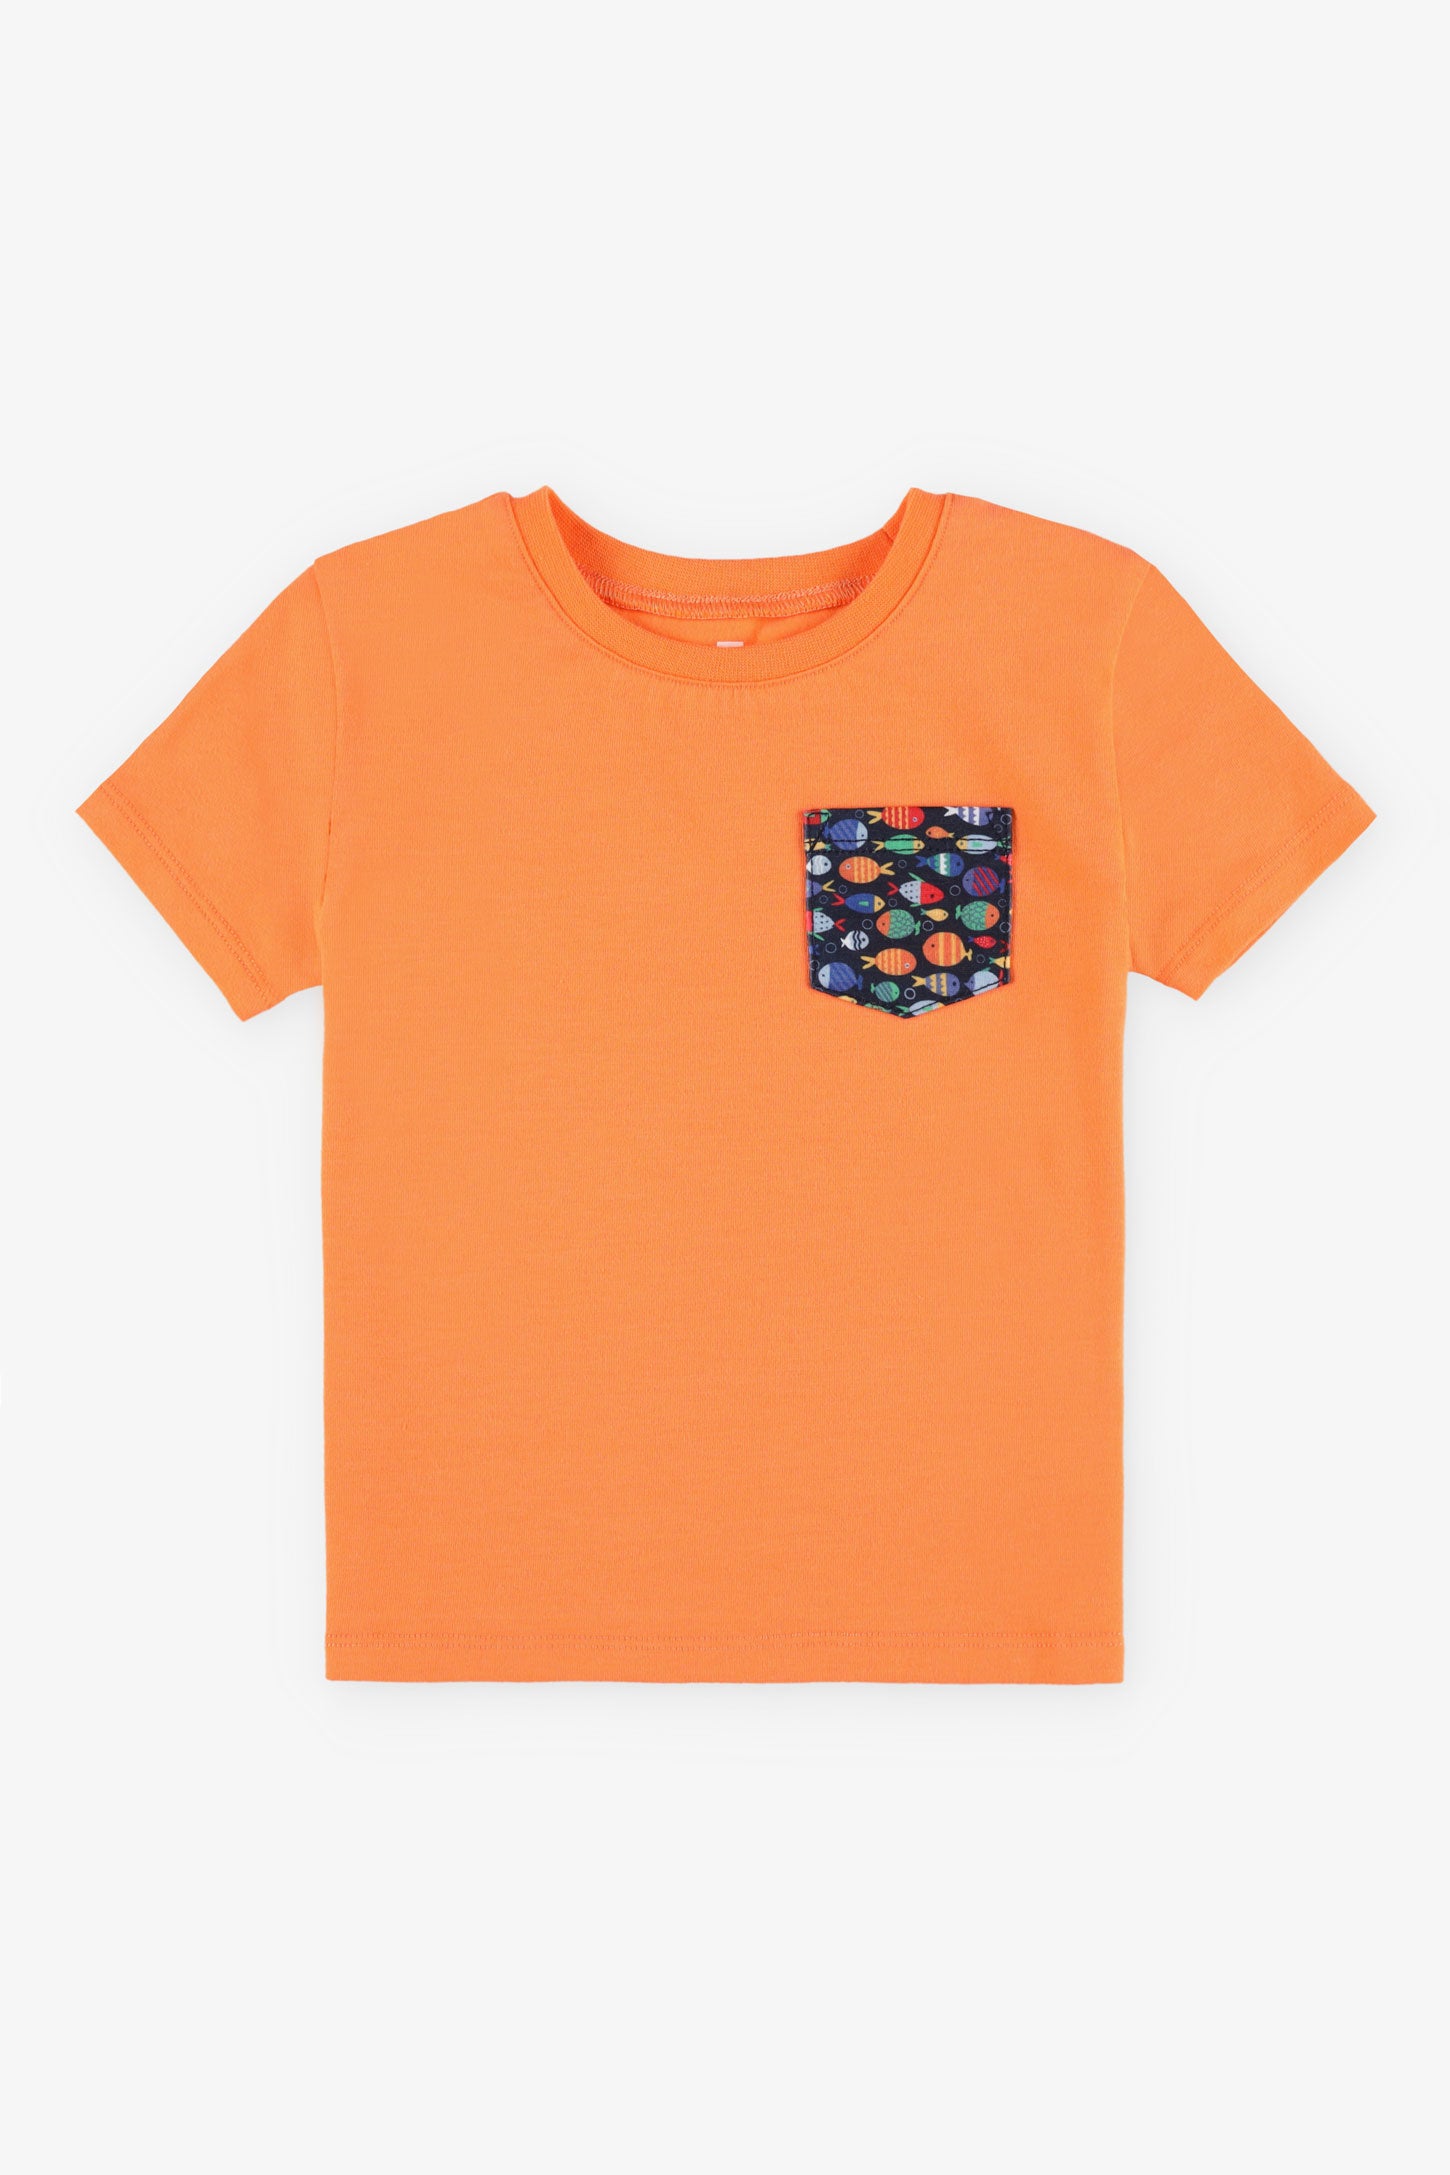 T-shirt col rond coupe droite coton, 2/15$ - Bébé garçon && ORANGE